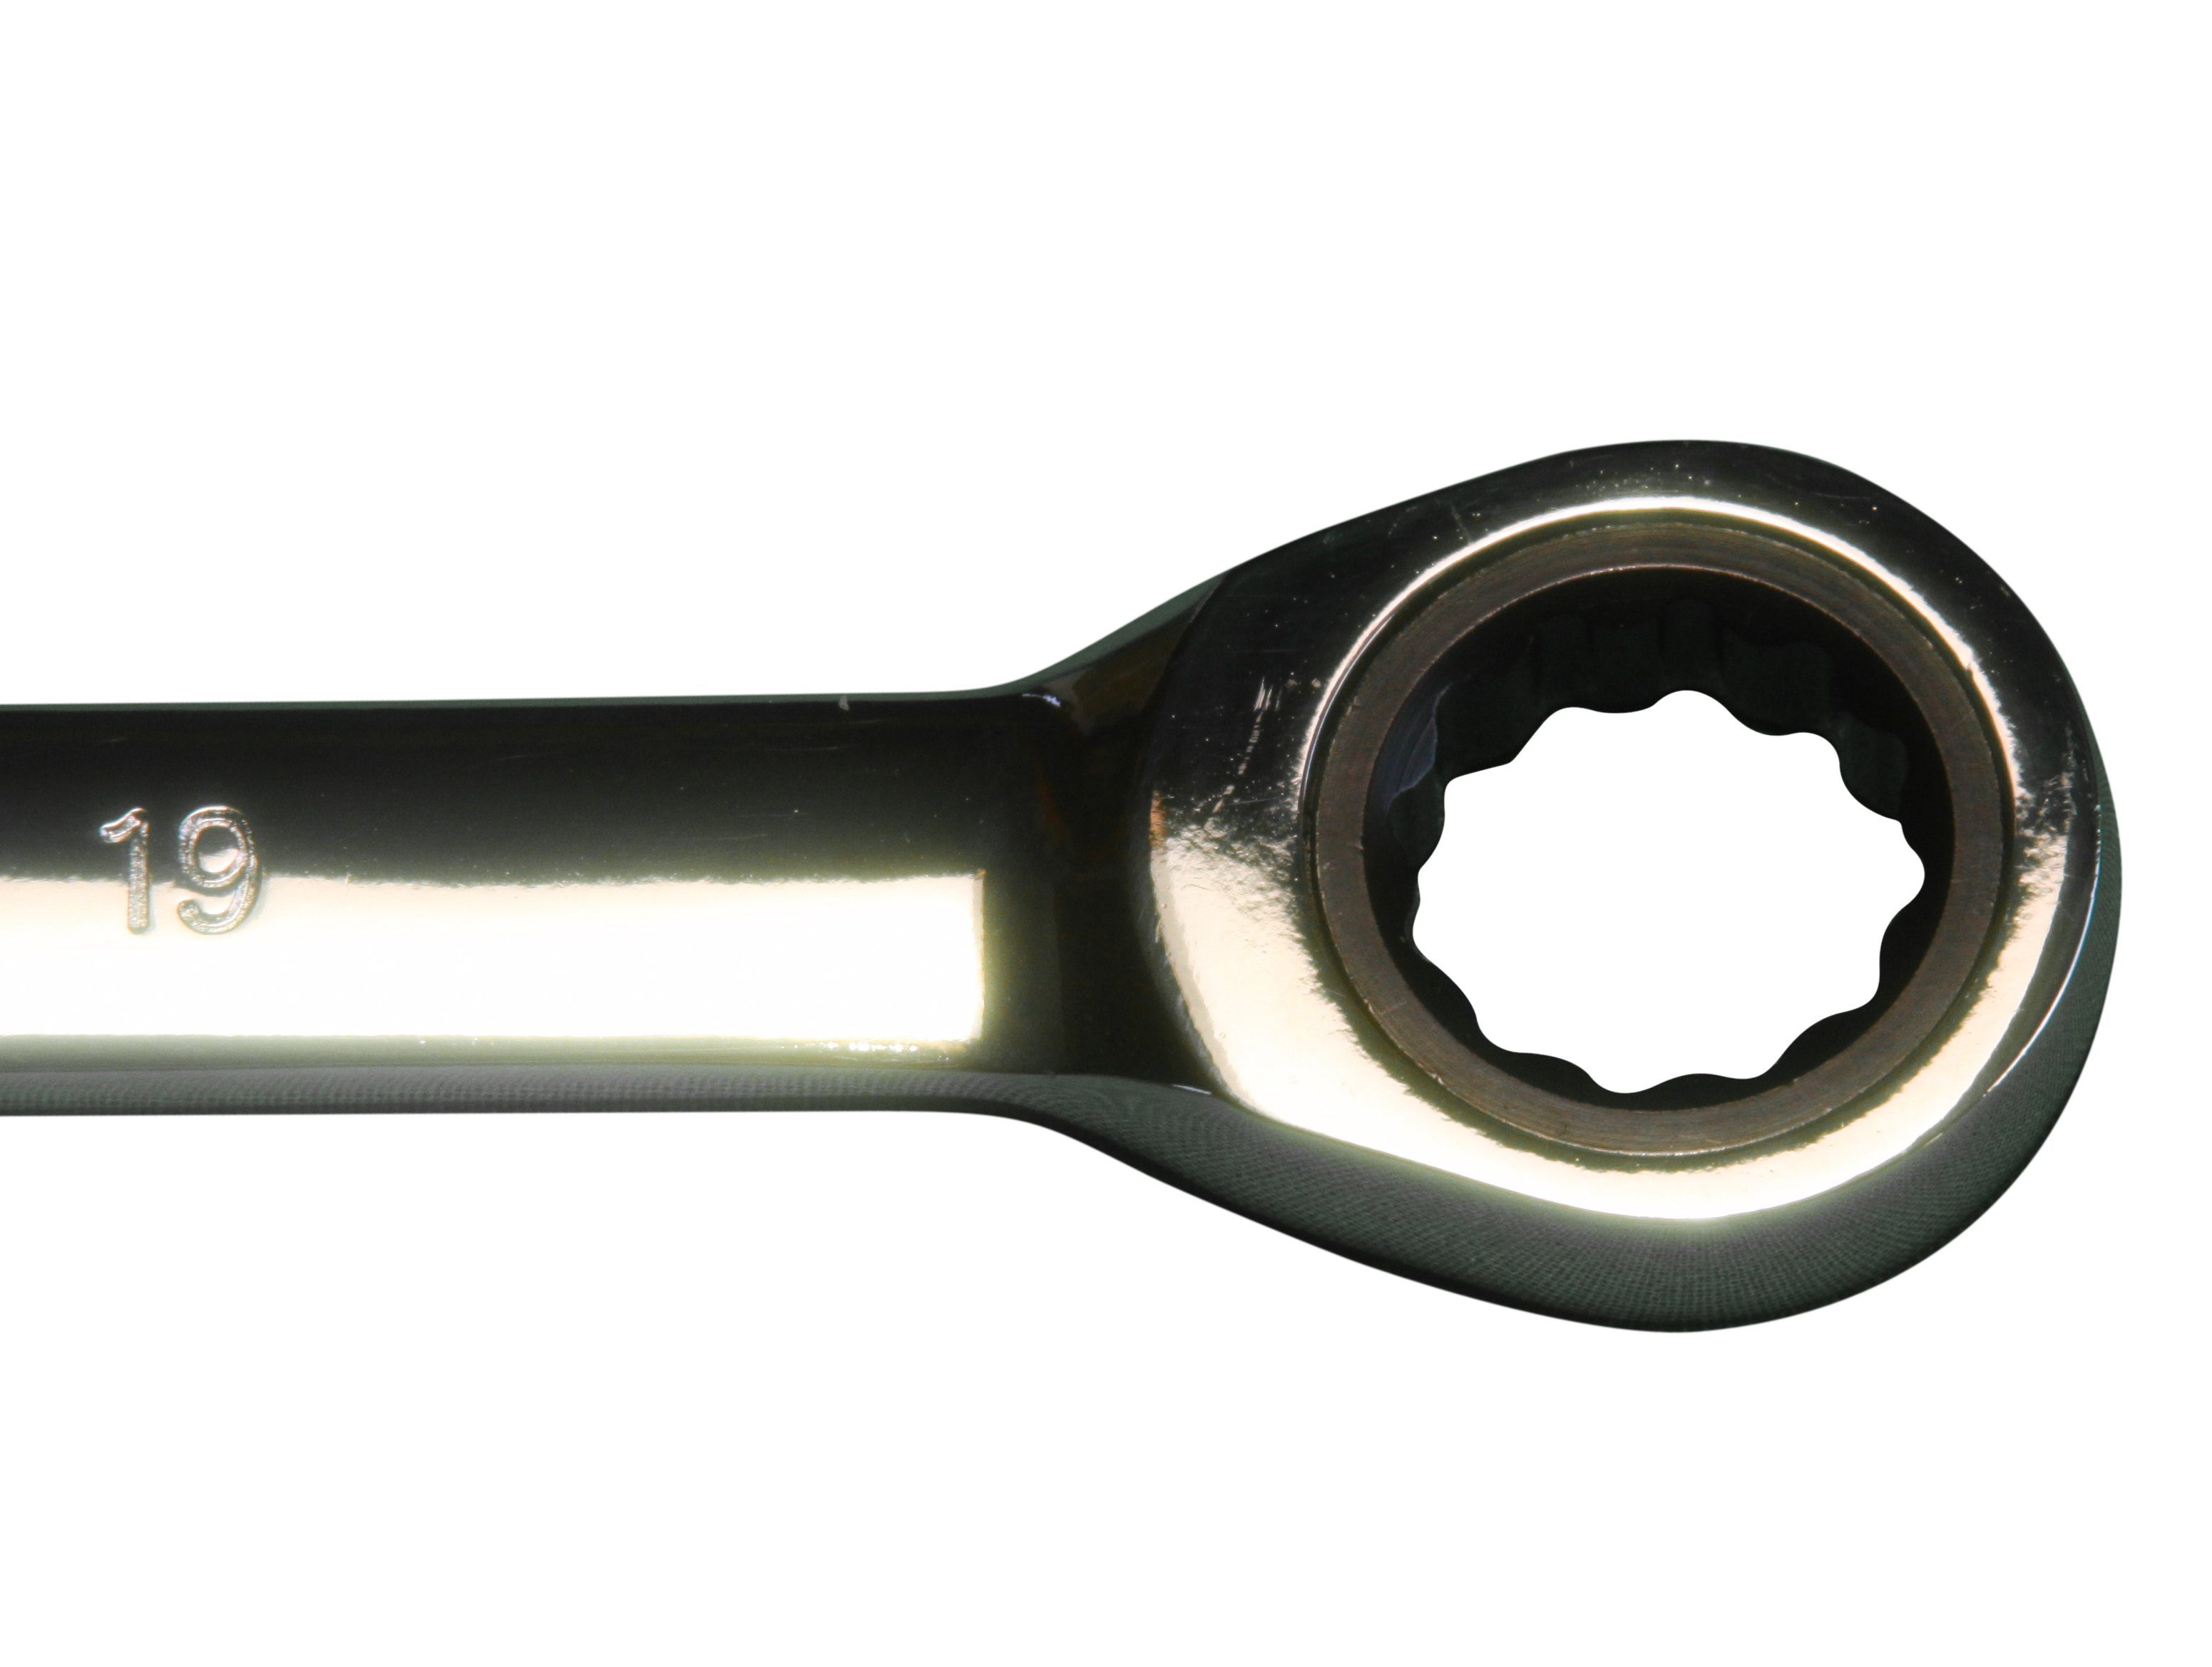 Ratschenringschlüssel Ringratschen St), Zähne Ratschen-Schlüssel 5° Chrom-Vanadium-Stahl 6-32 mm Maul-Schlüssel-Satz 22-tlg. PeTools (22 72